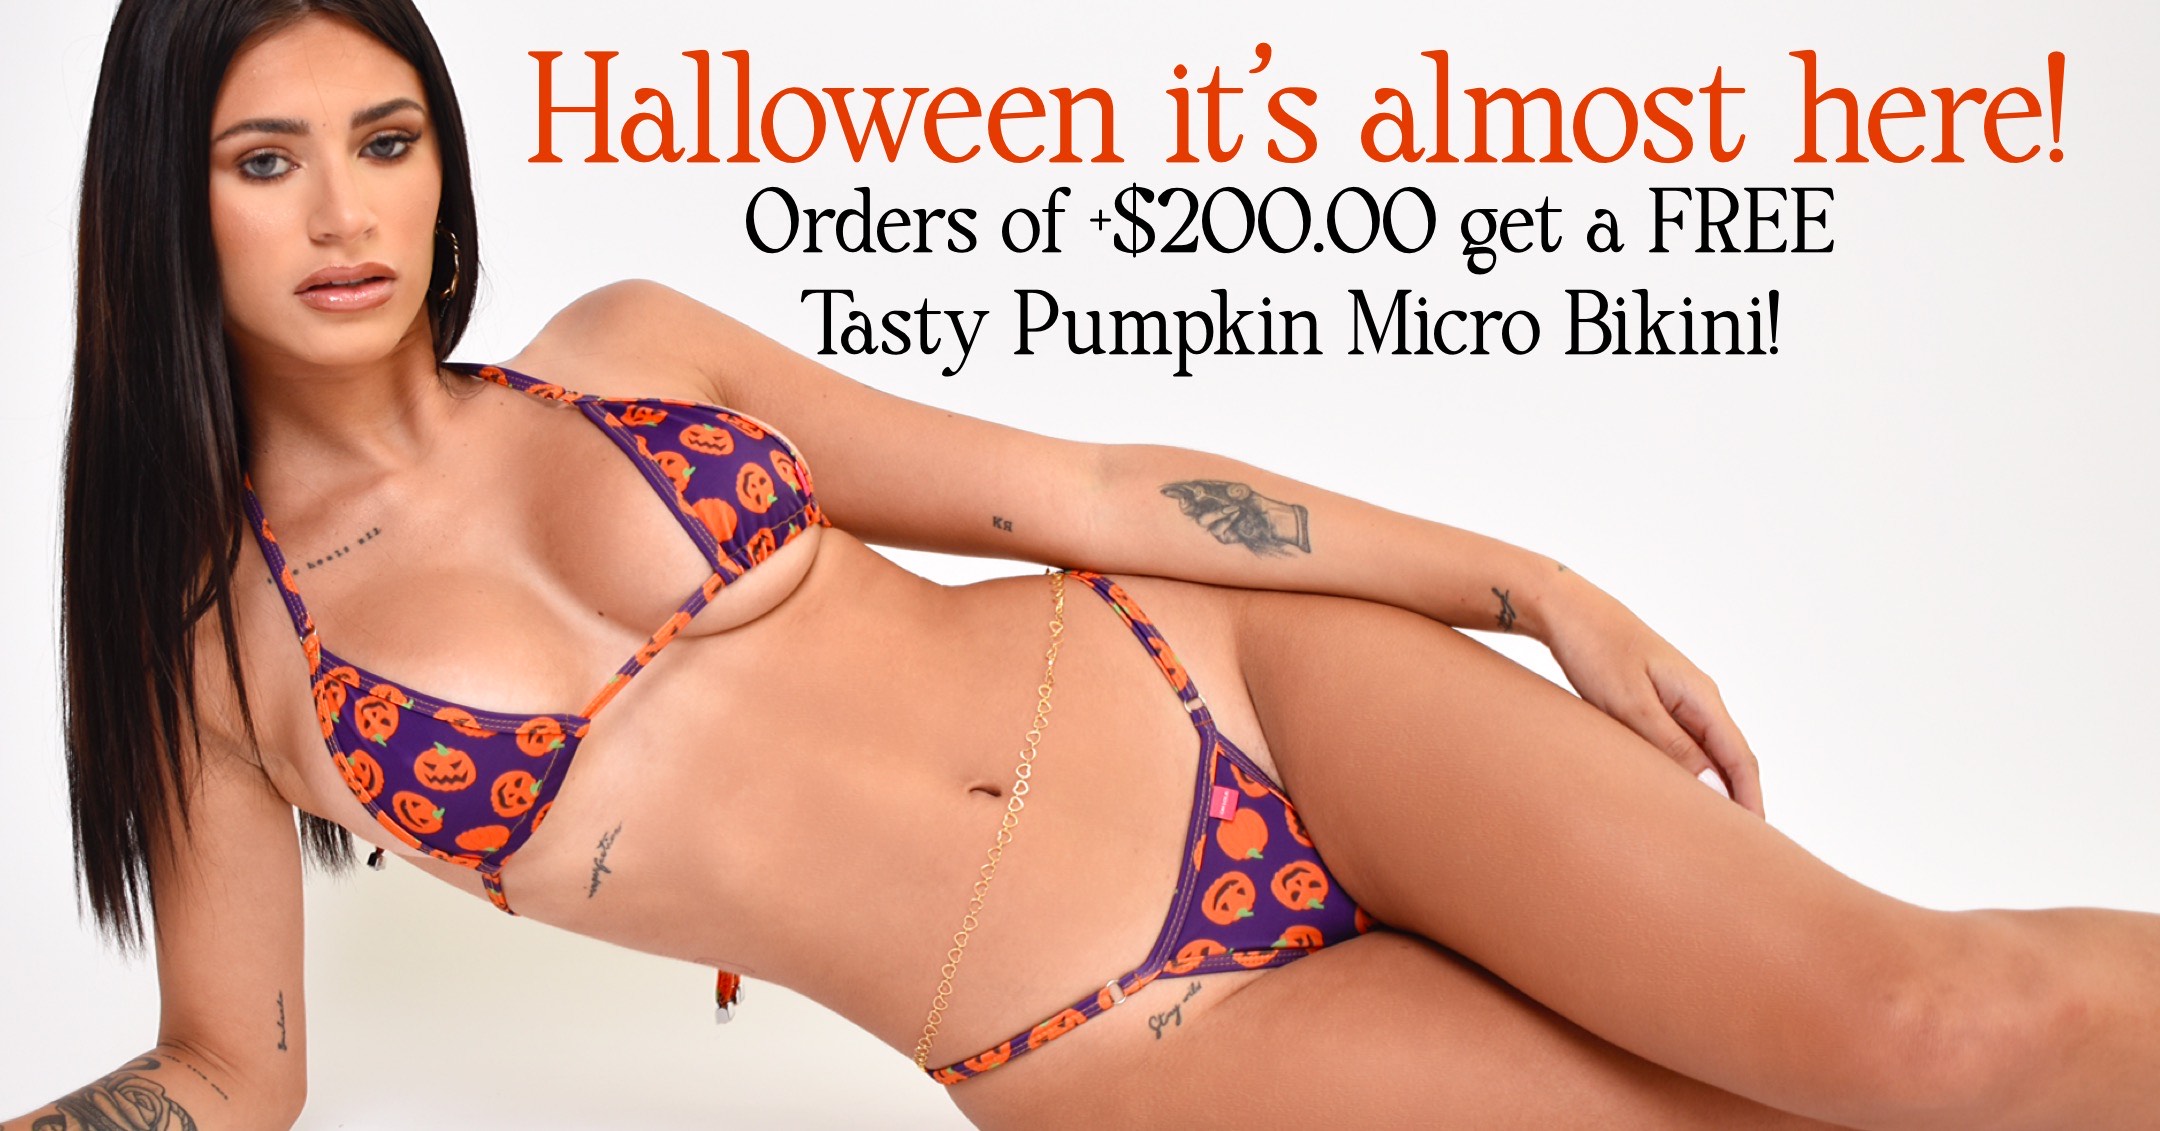 Halloween Micro Bikini promo!